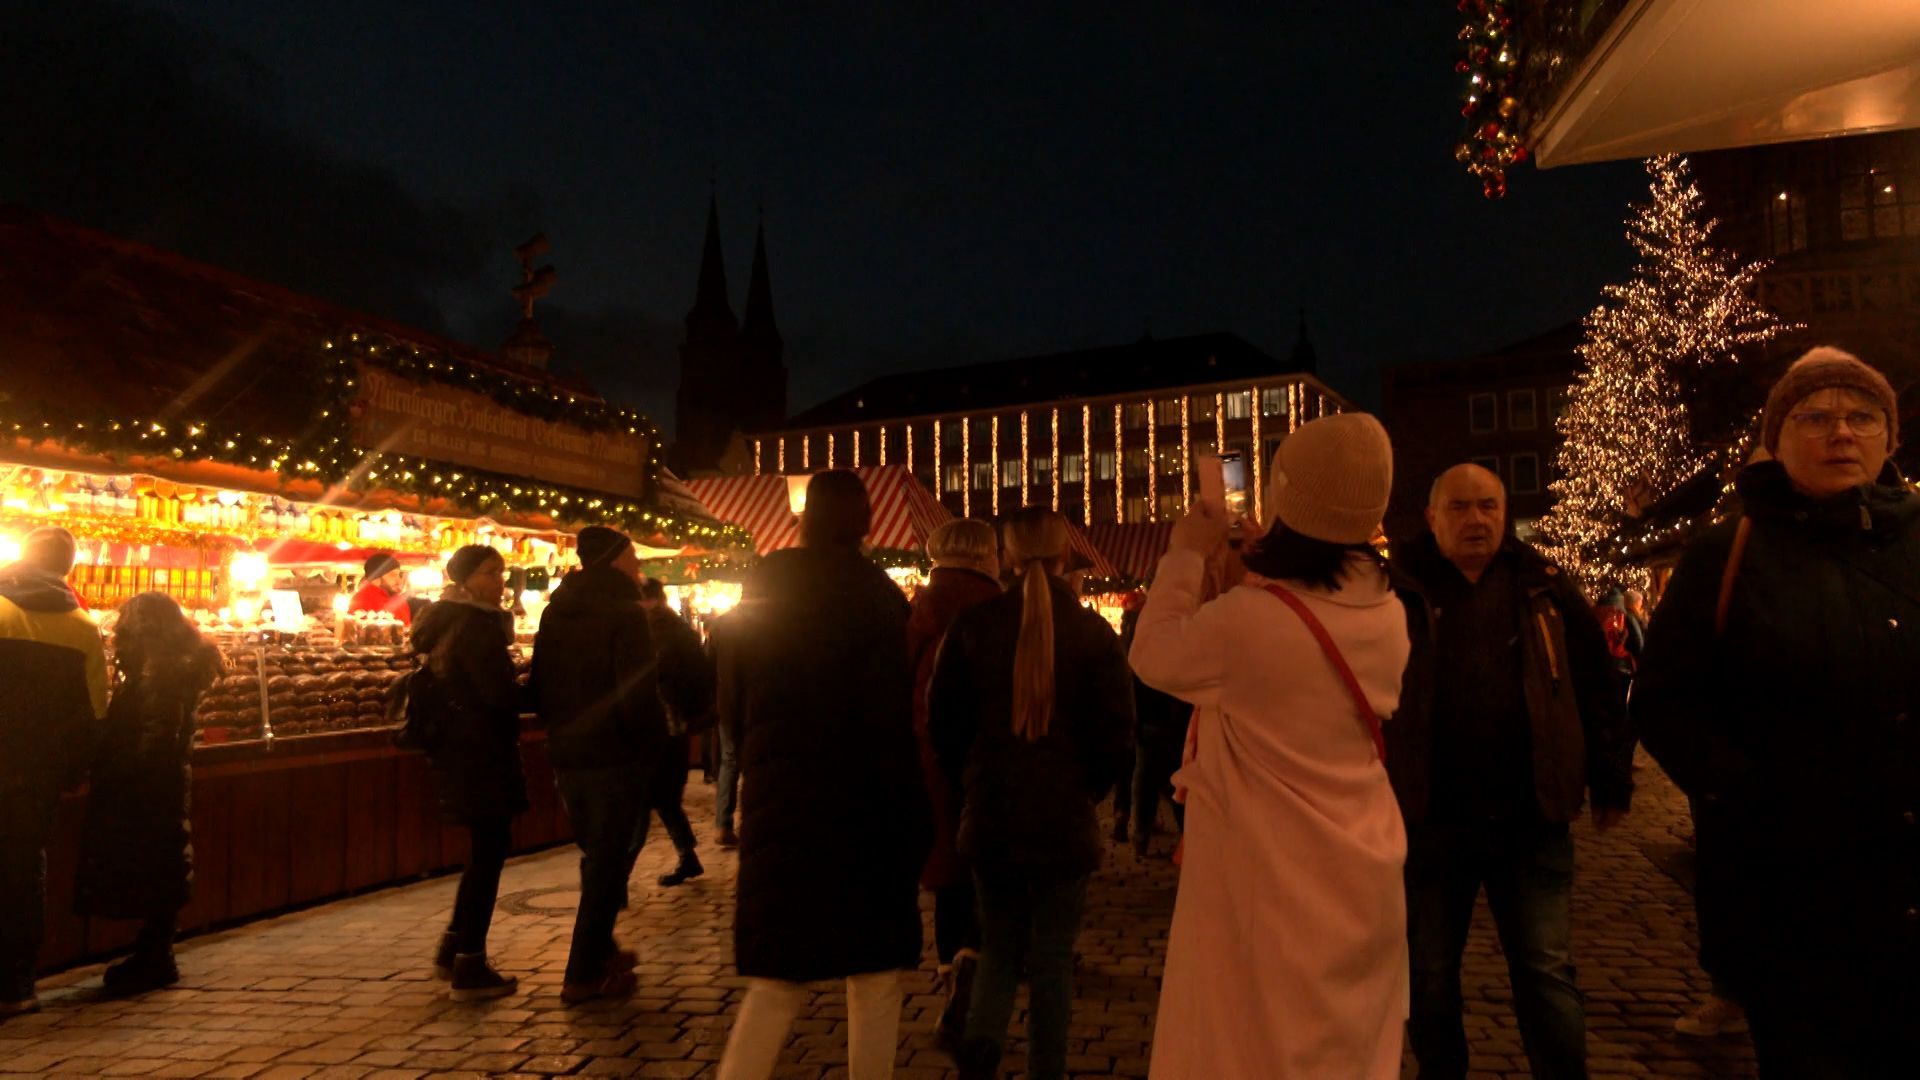 Halbzeit: Christkindlesmarkt Nürnberg zieht Bilanz